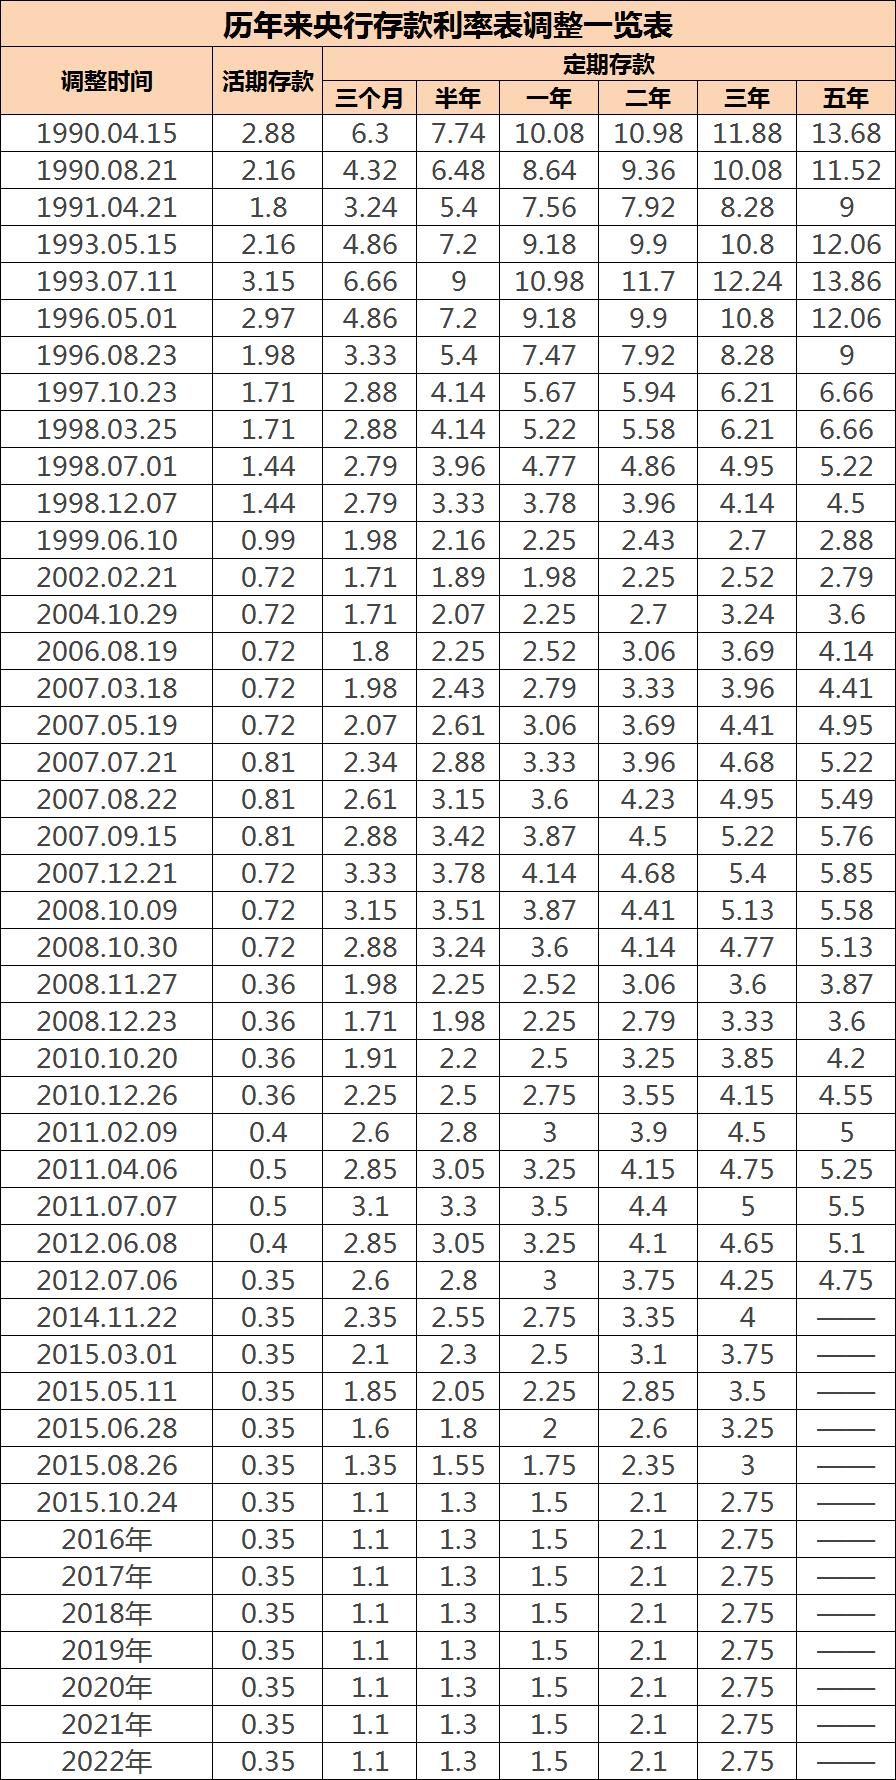 啥也别说了,简单明了,上2张图:历年来央行存款利率的变化3,利率下调